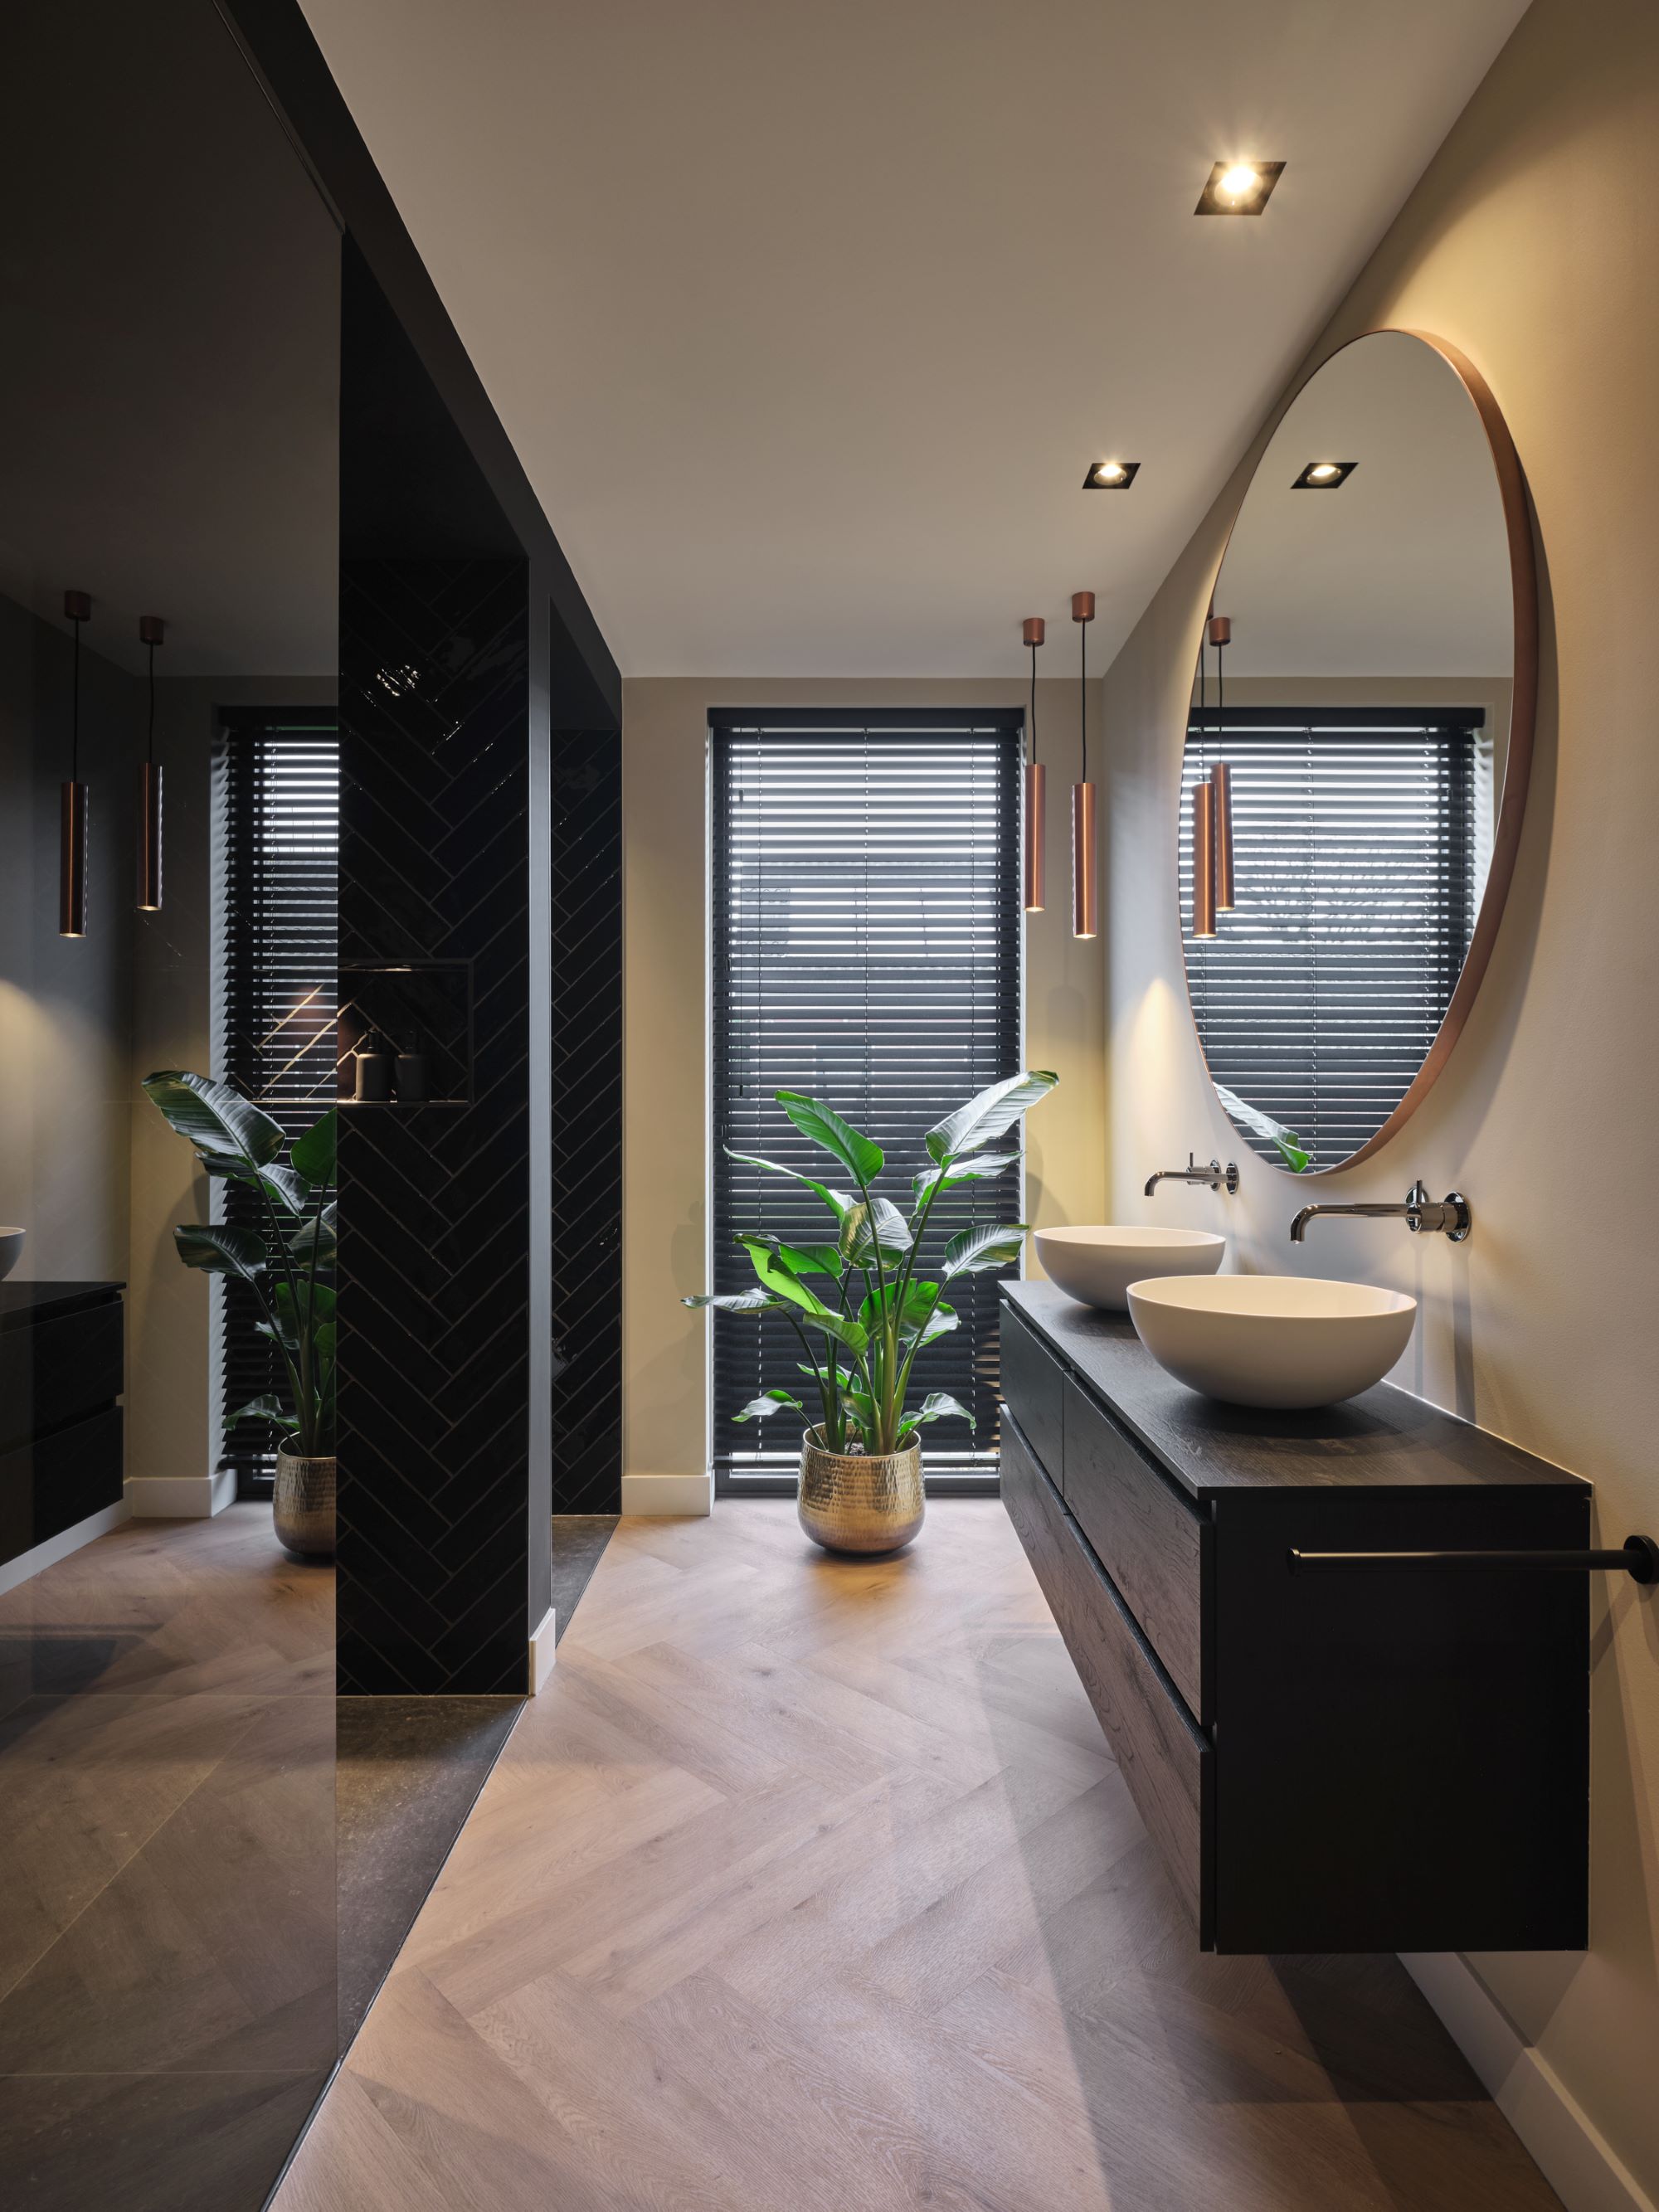 Foto : Een stijlvolle badkamer in donkere tinten